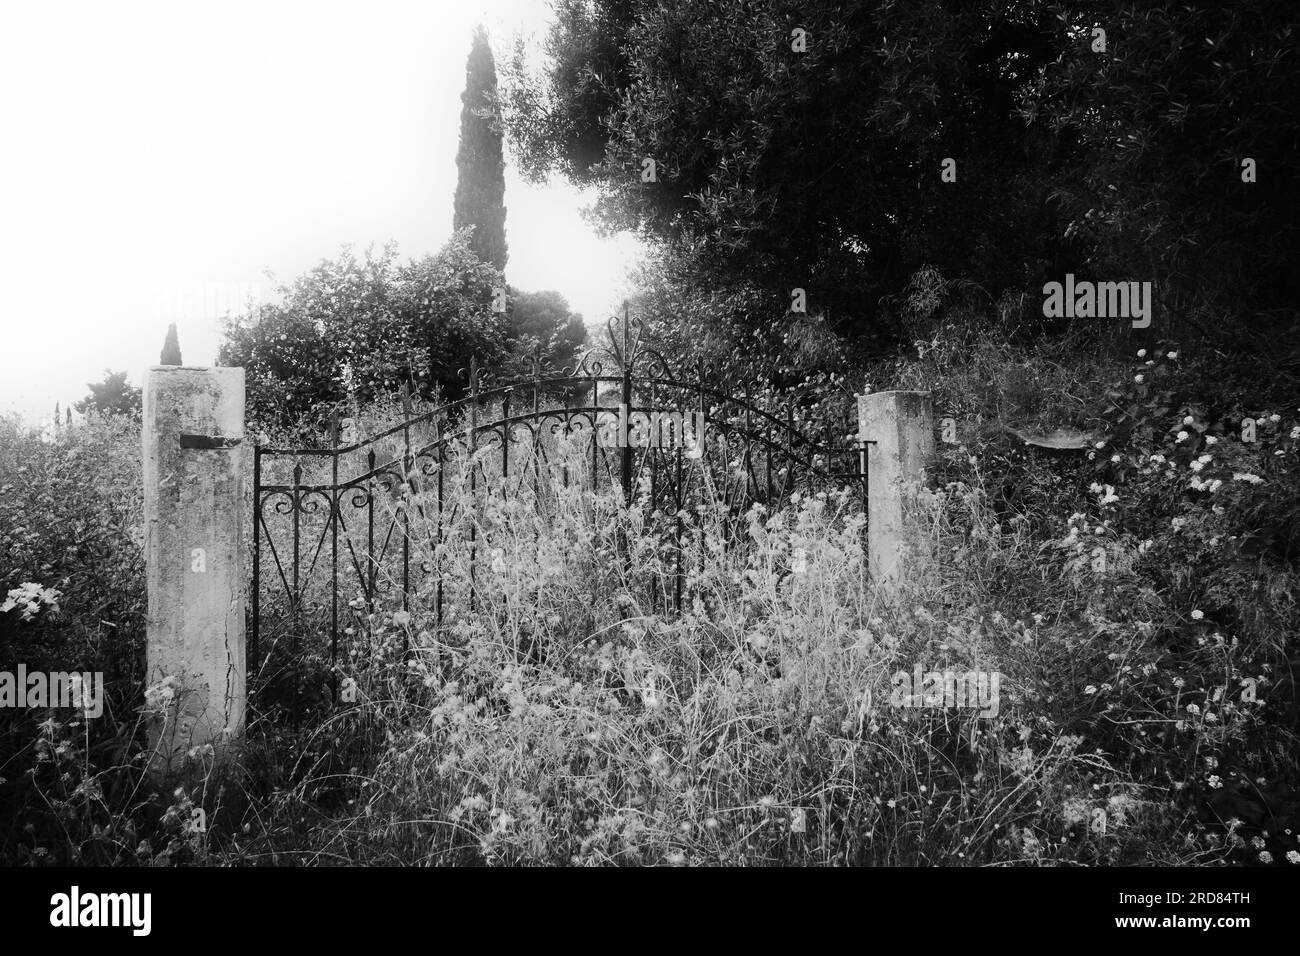 Image monochrome d'une fois grandes portes d'entrée en fer forgé sur deux poteaux en béton brut sans clôture attachée très envahie, Céphalonie Grèce Banque D'Images